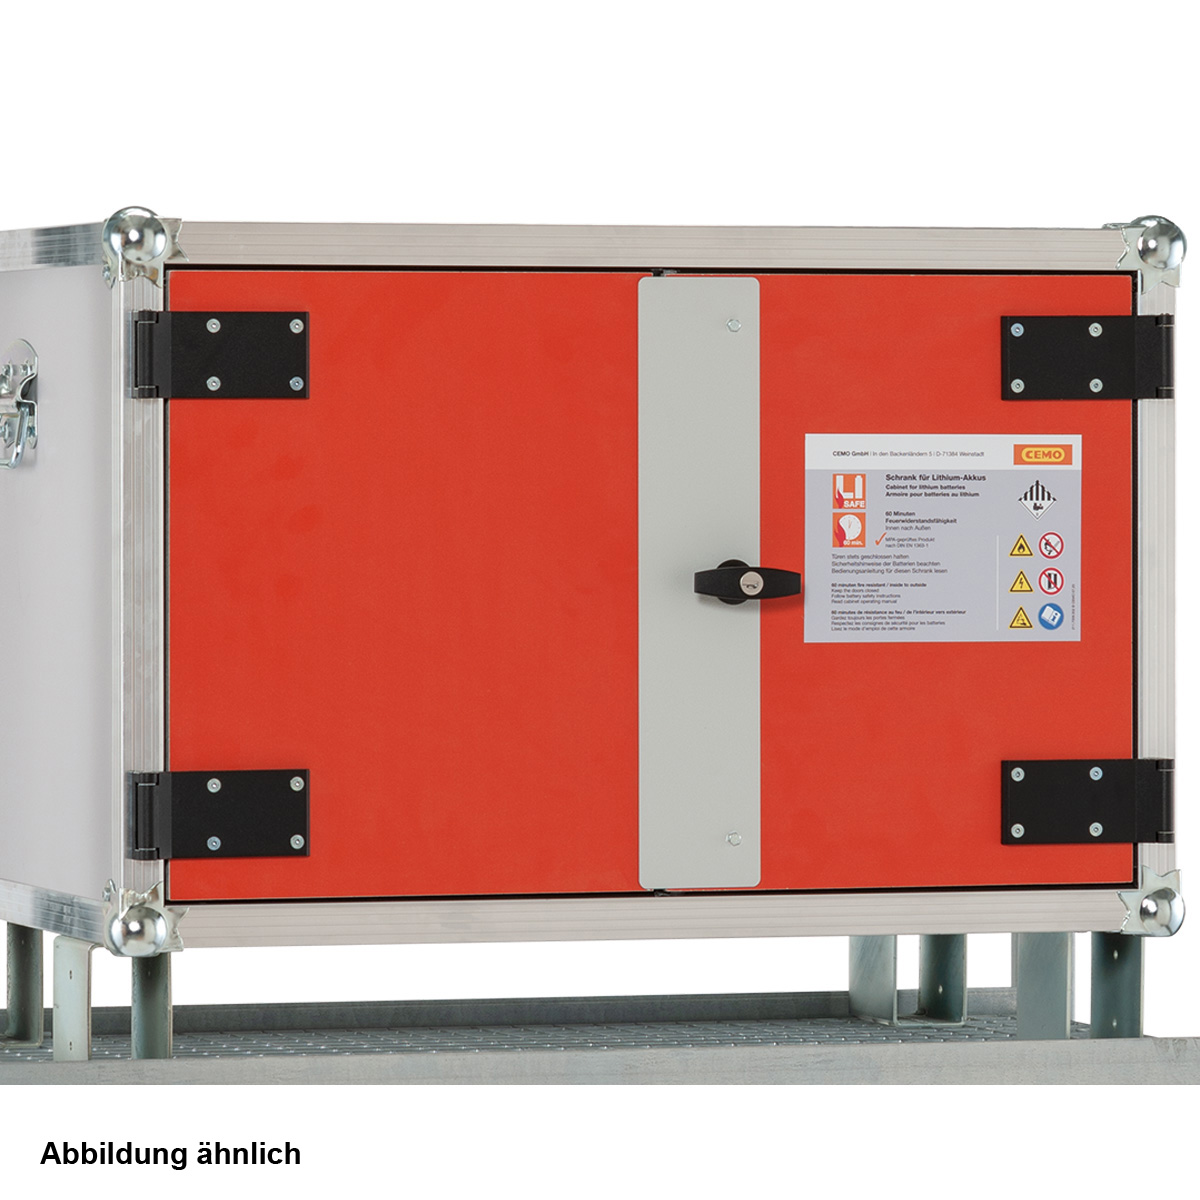 Li-SAFE Akku-Ladeschrank 8/5 lockEX Premium Plus, 1-ph, mit Rauchmelder, Steckdose, Lüftung, Füßen